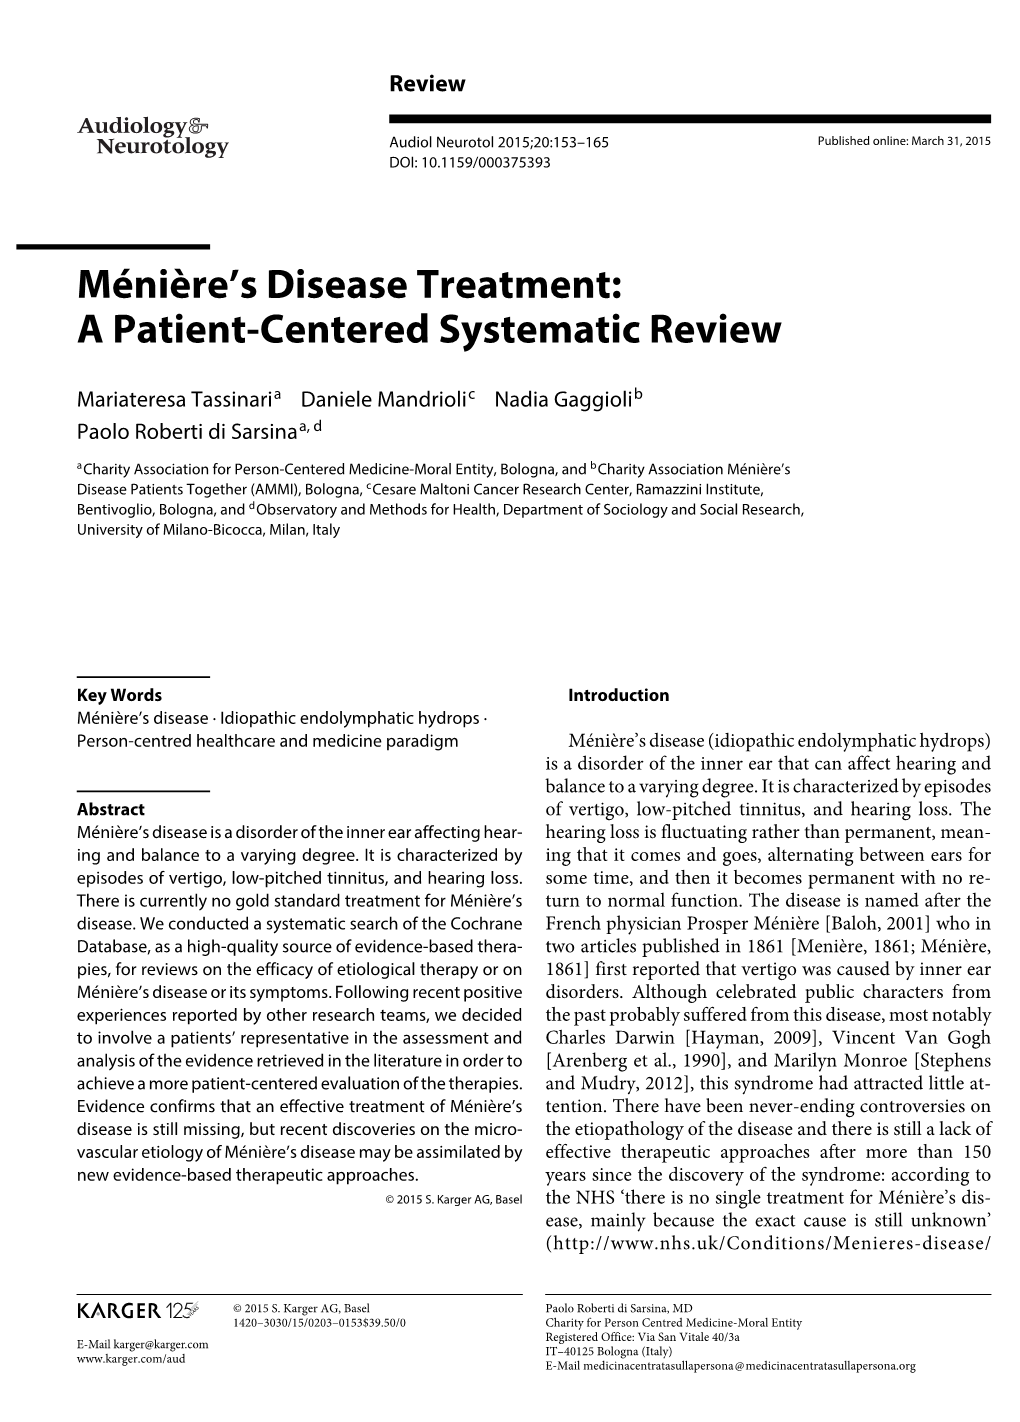 Ménière's Disease Treatment: a Patient-Centered Systematic Review